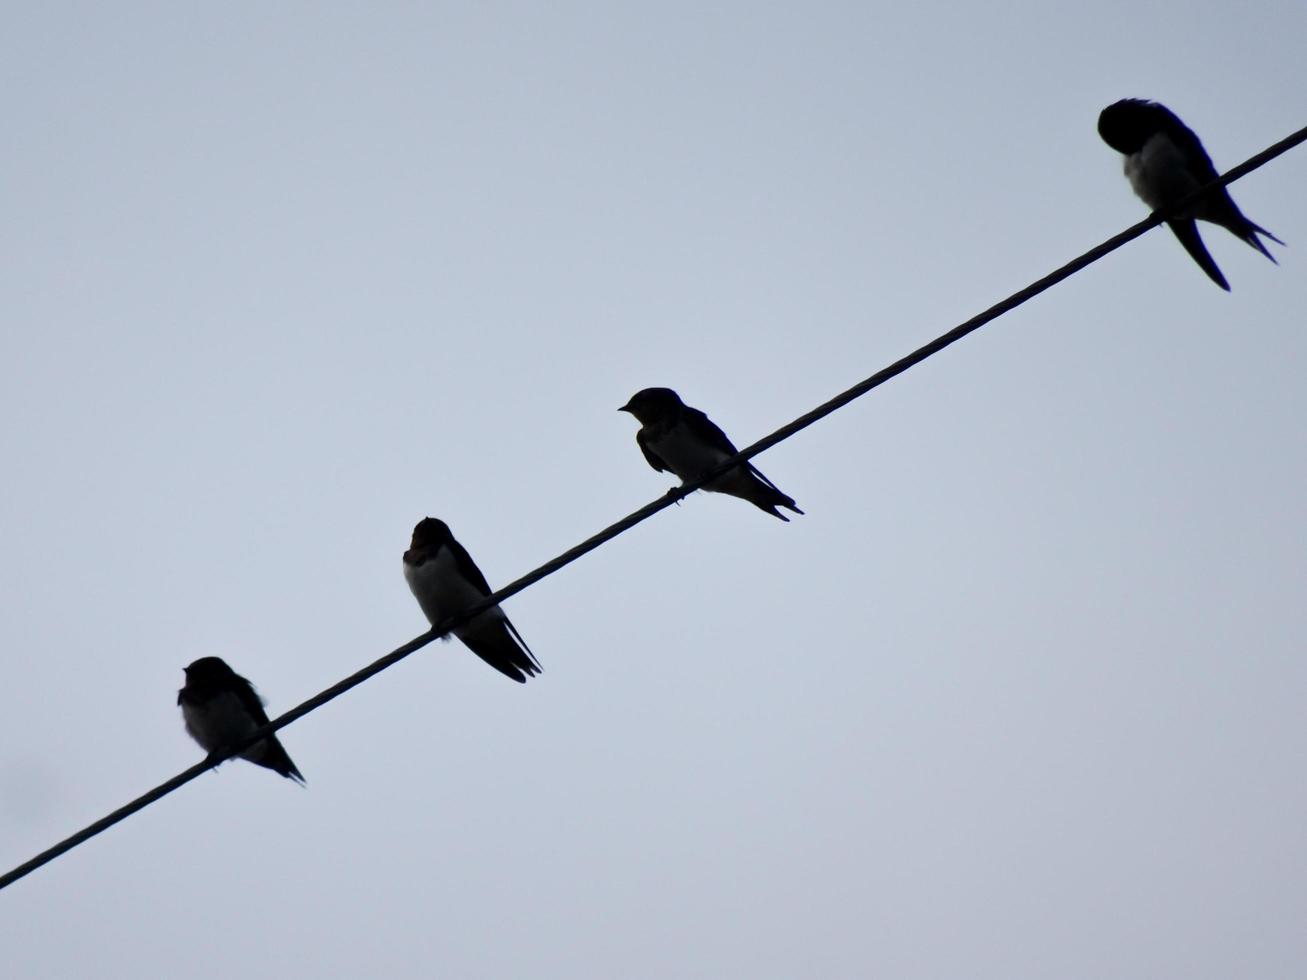 la volée d'oiseaux perchés sur les lignes électriques par temps nuageux. la scène de la nature dans la nuance sombre du jour. photo